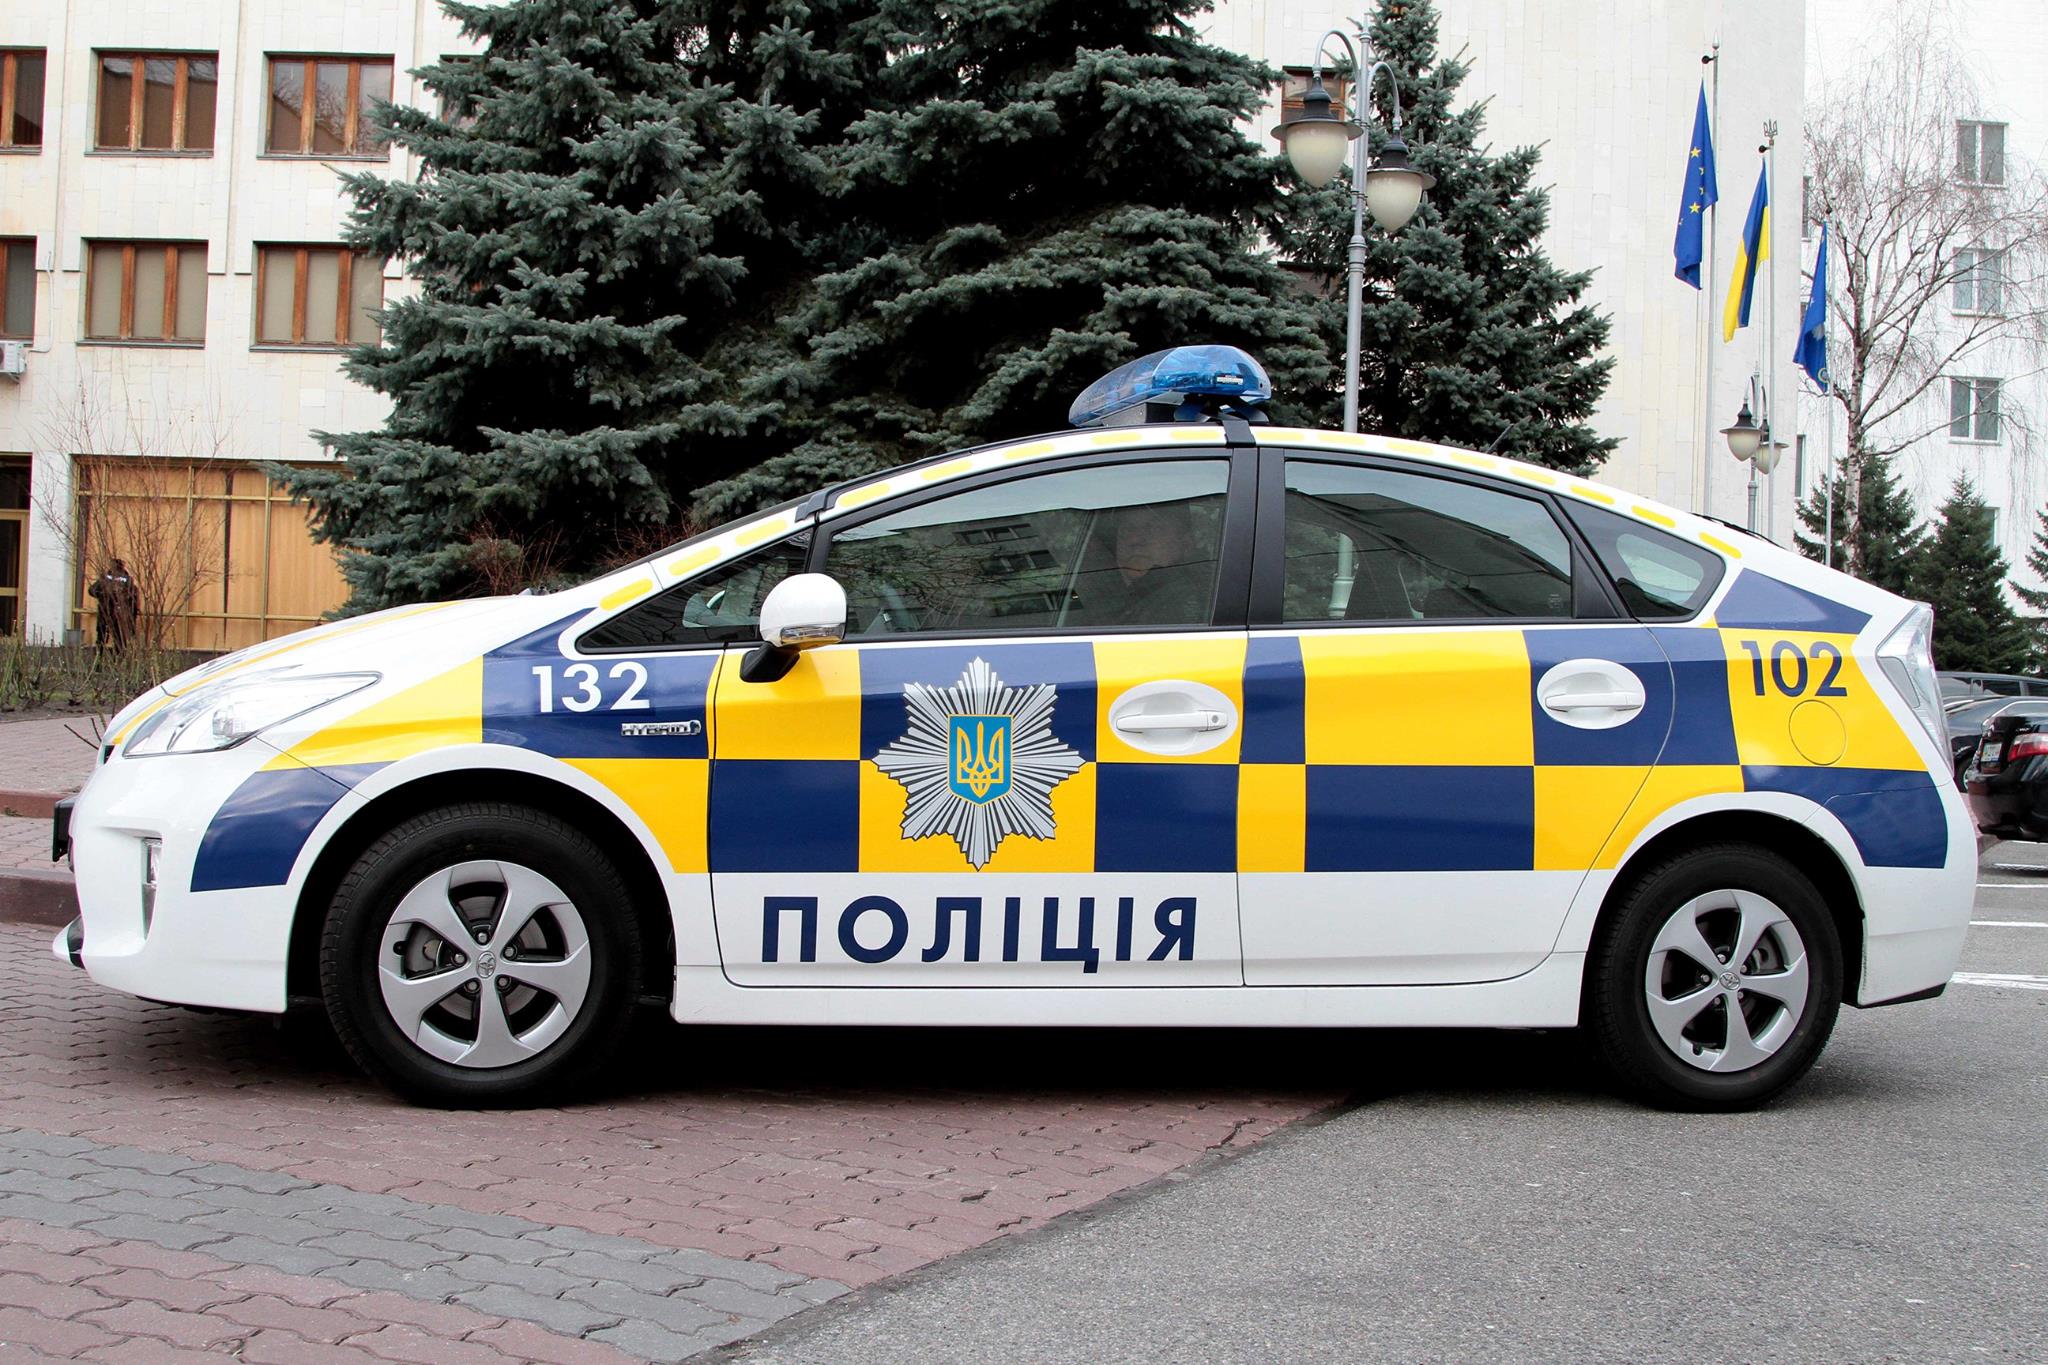 الشرطة تطلق النار على نفسها واللصوص يهربون في أوكرانيا